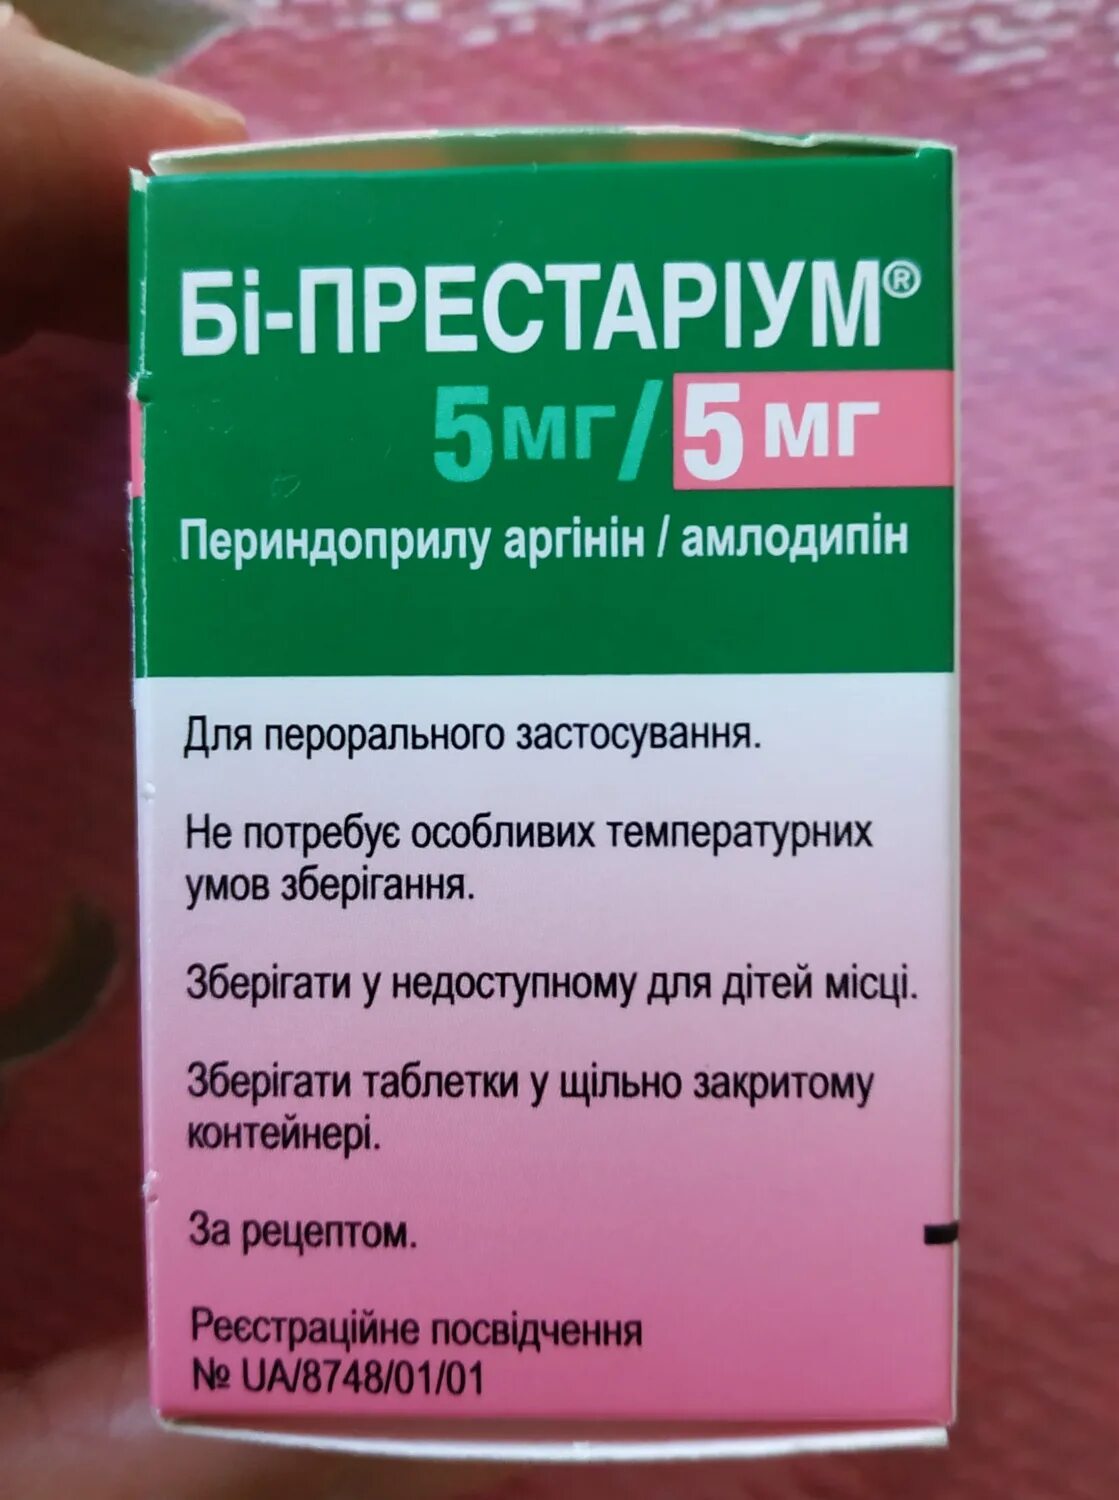 Аналог престариума 5 мг. Престариум 5+5. Престариум а 5мг зеленый упаковка. Престариум 5 мг от давление. Таблетки от давления повышенного Престариум.